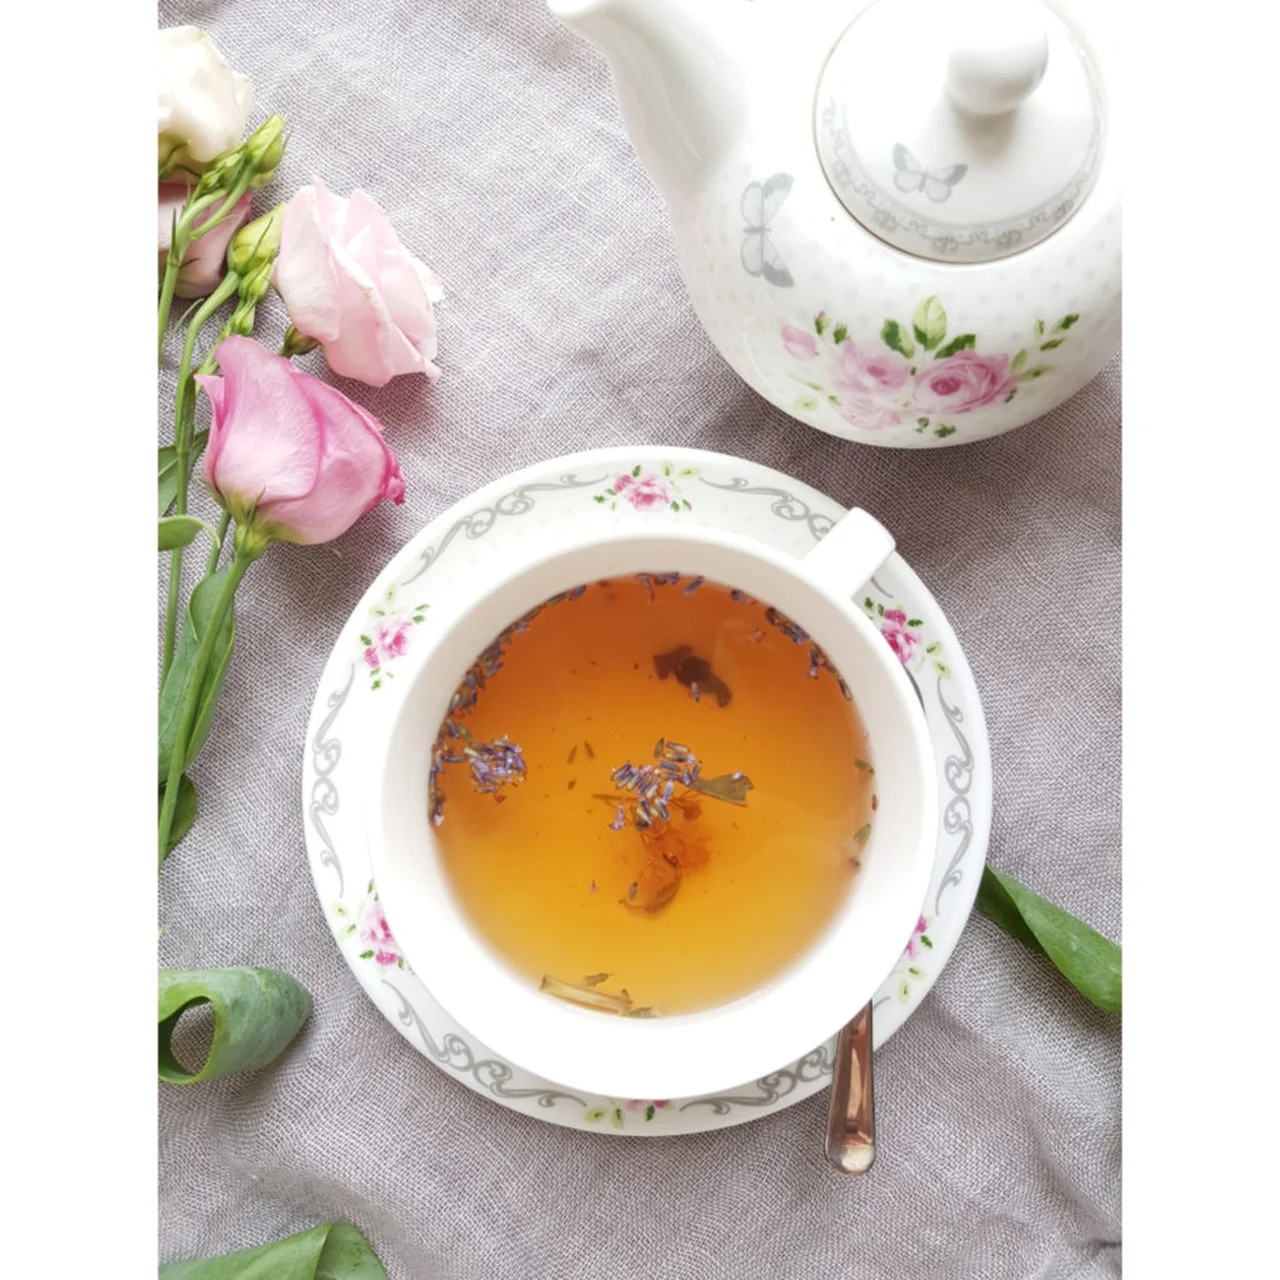 herbata lawendowa z kwiatem lipy i szałwią